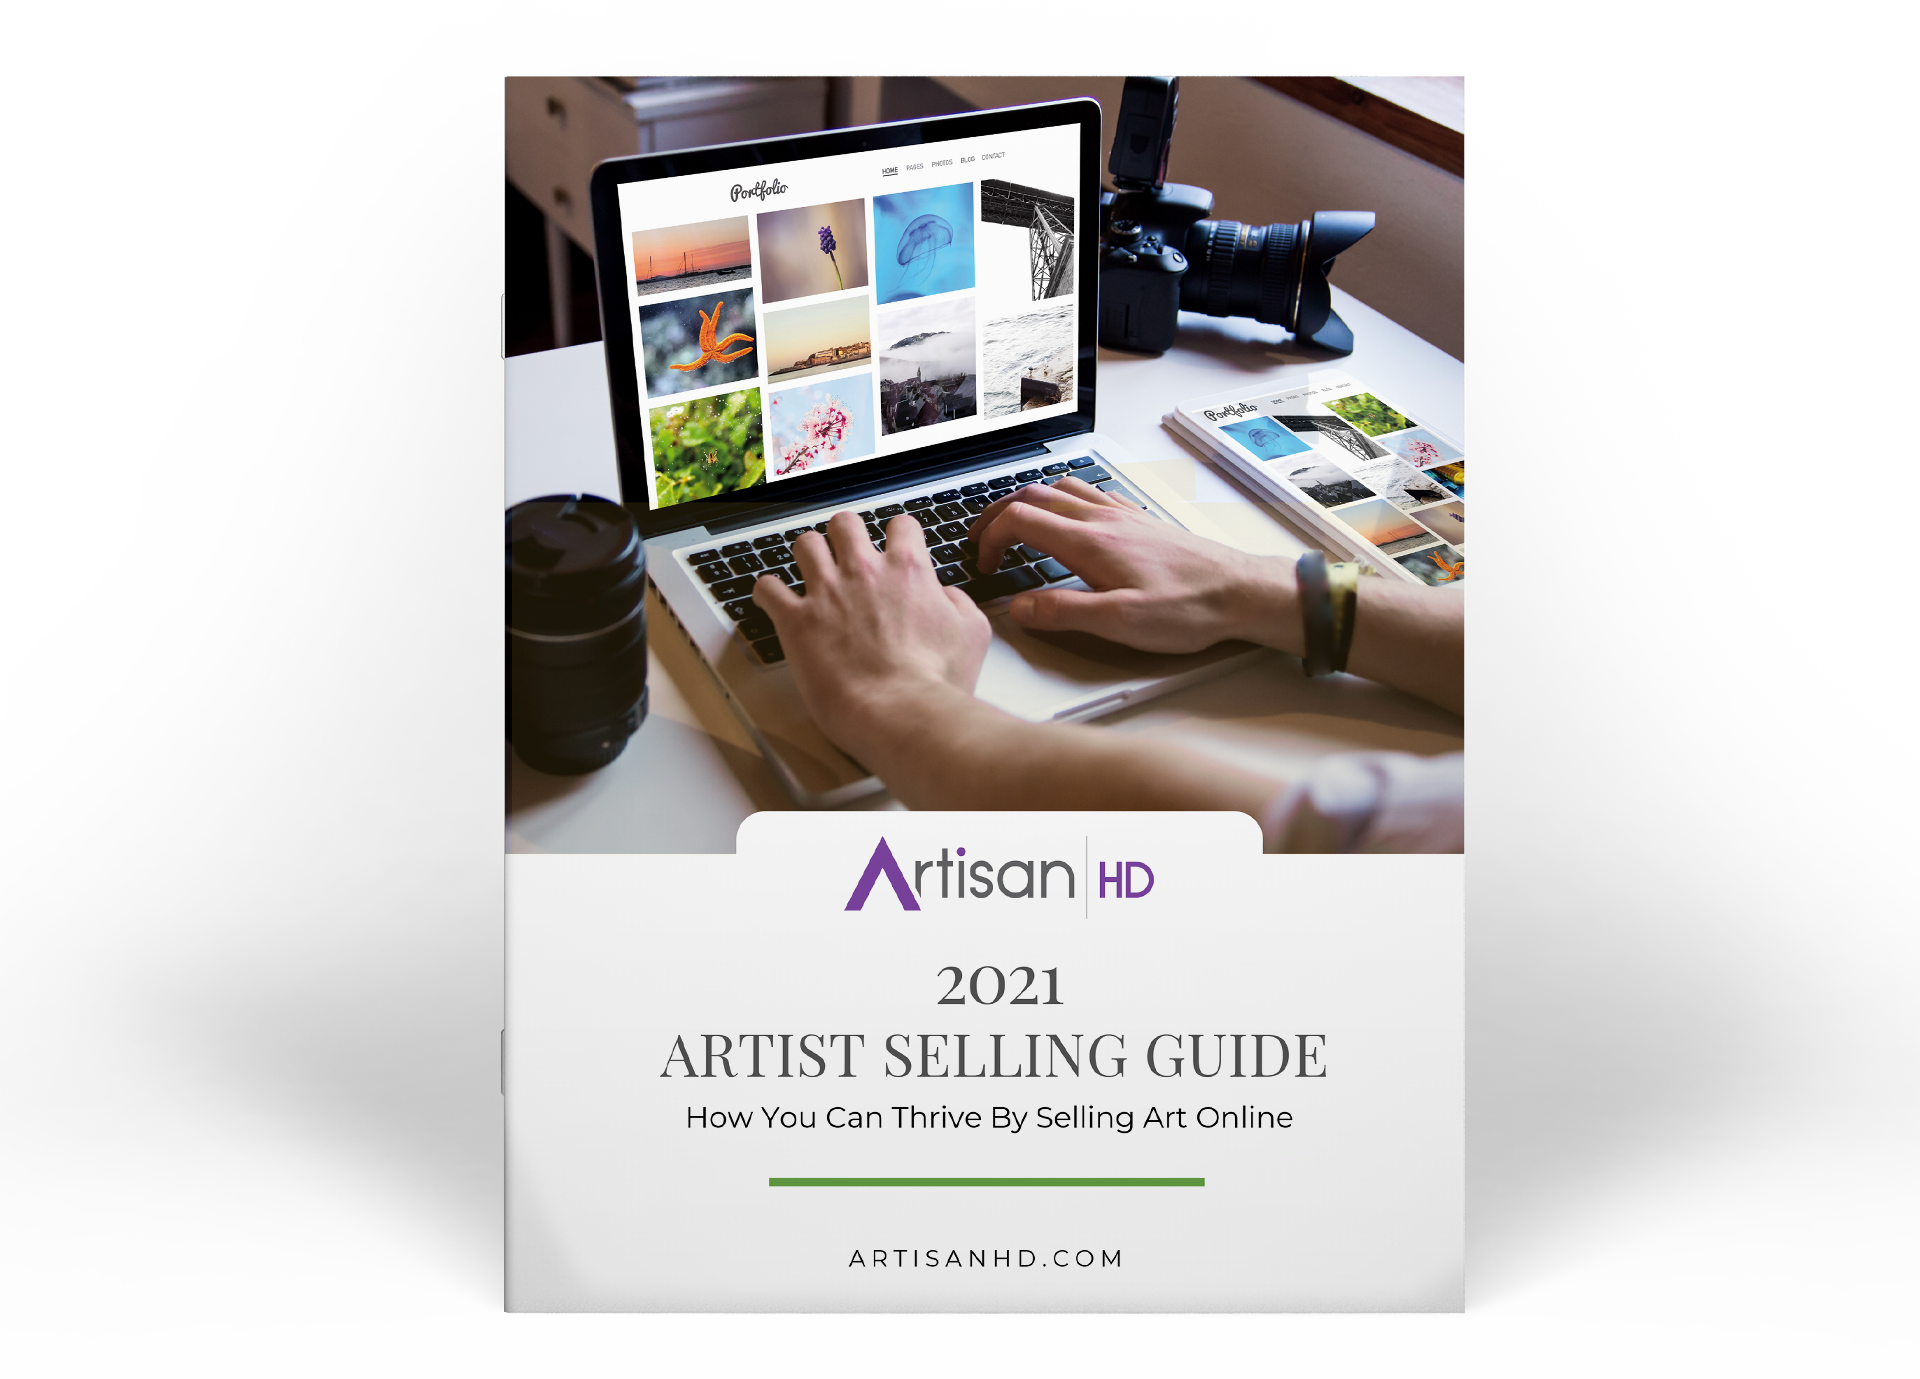 ArtisanHD Artist Selling Guide Image